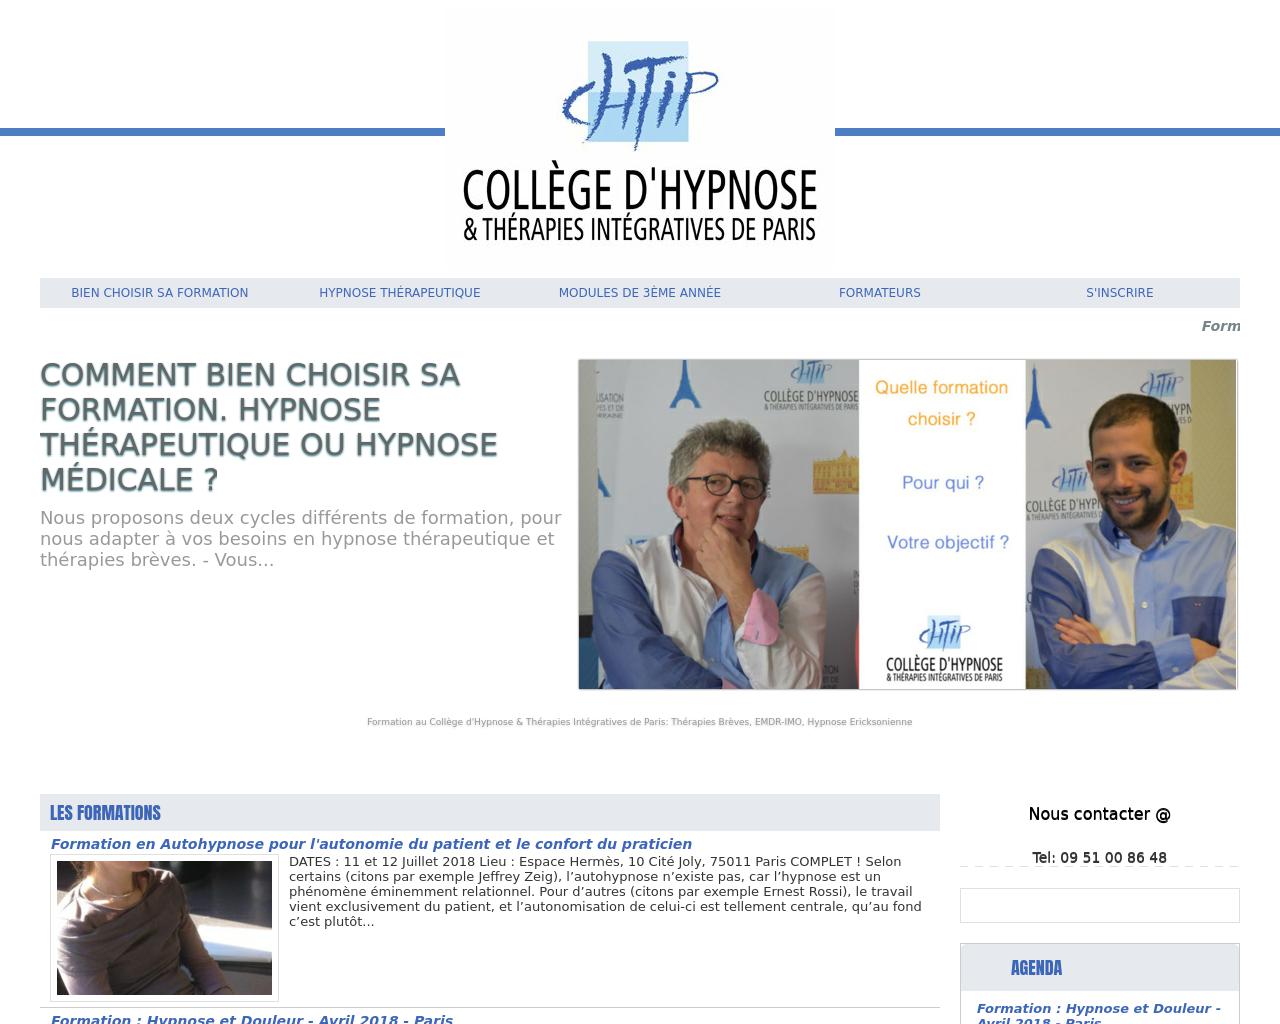 Formation en Hypnose et Thérapies Brèves Intégratives à Paris